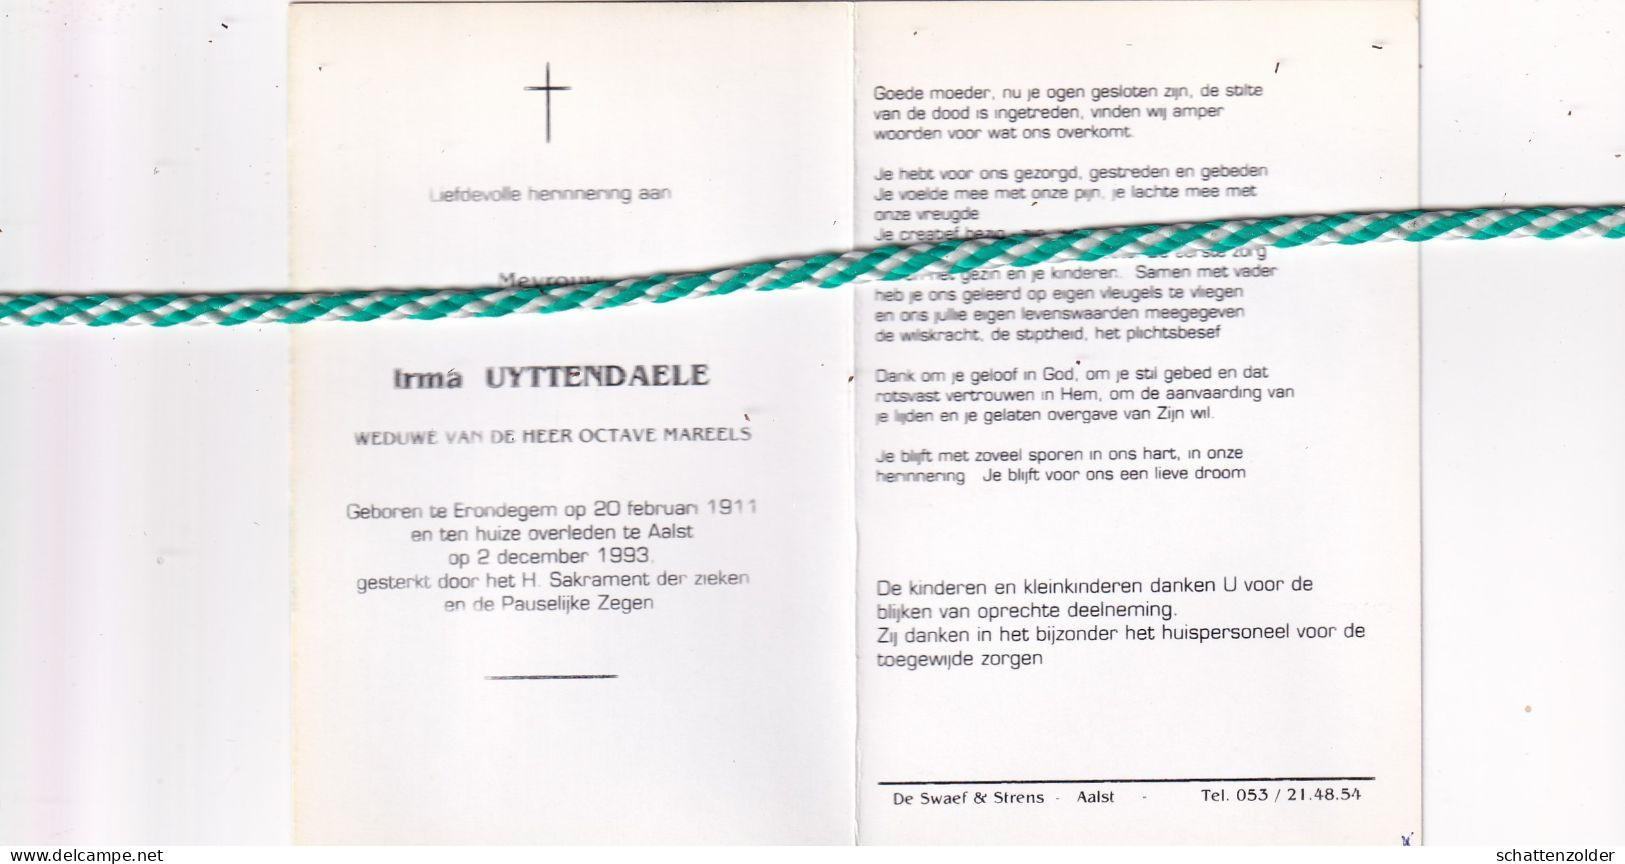 Irma Uyttendaele-Mareels, Erondegem 1911, Aalst 1993. Foto - Obituary Notices